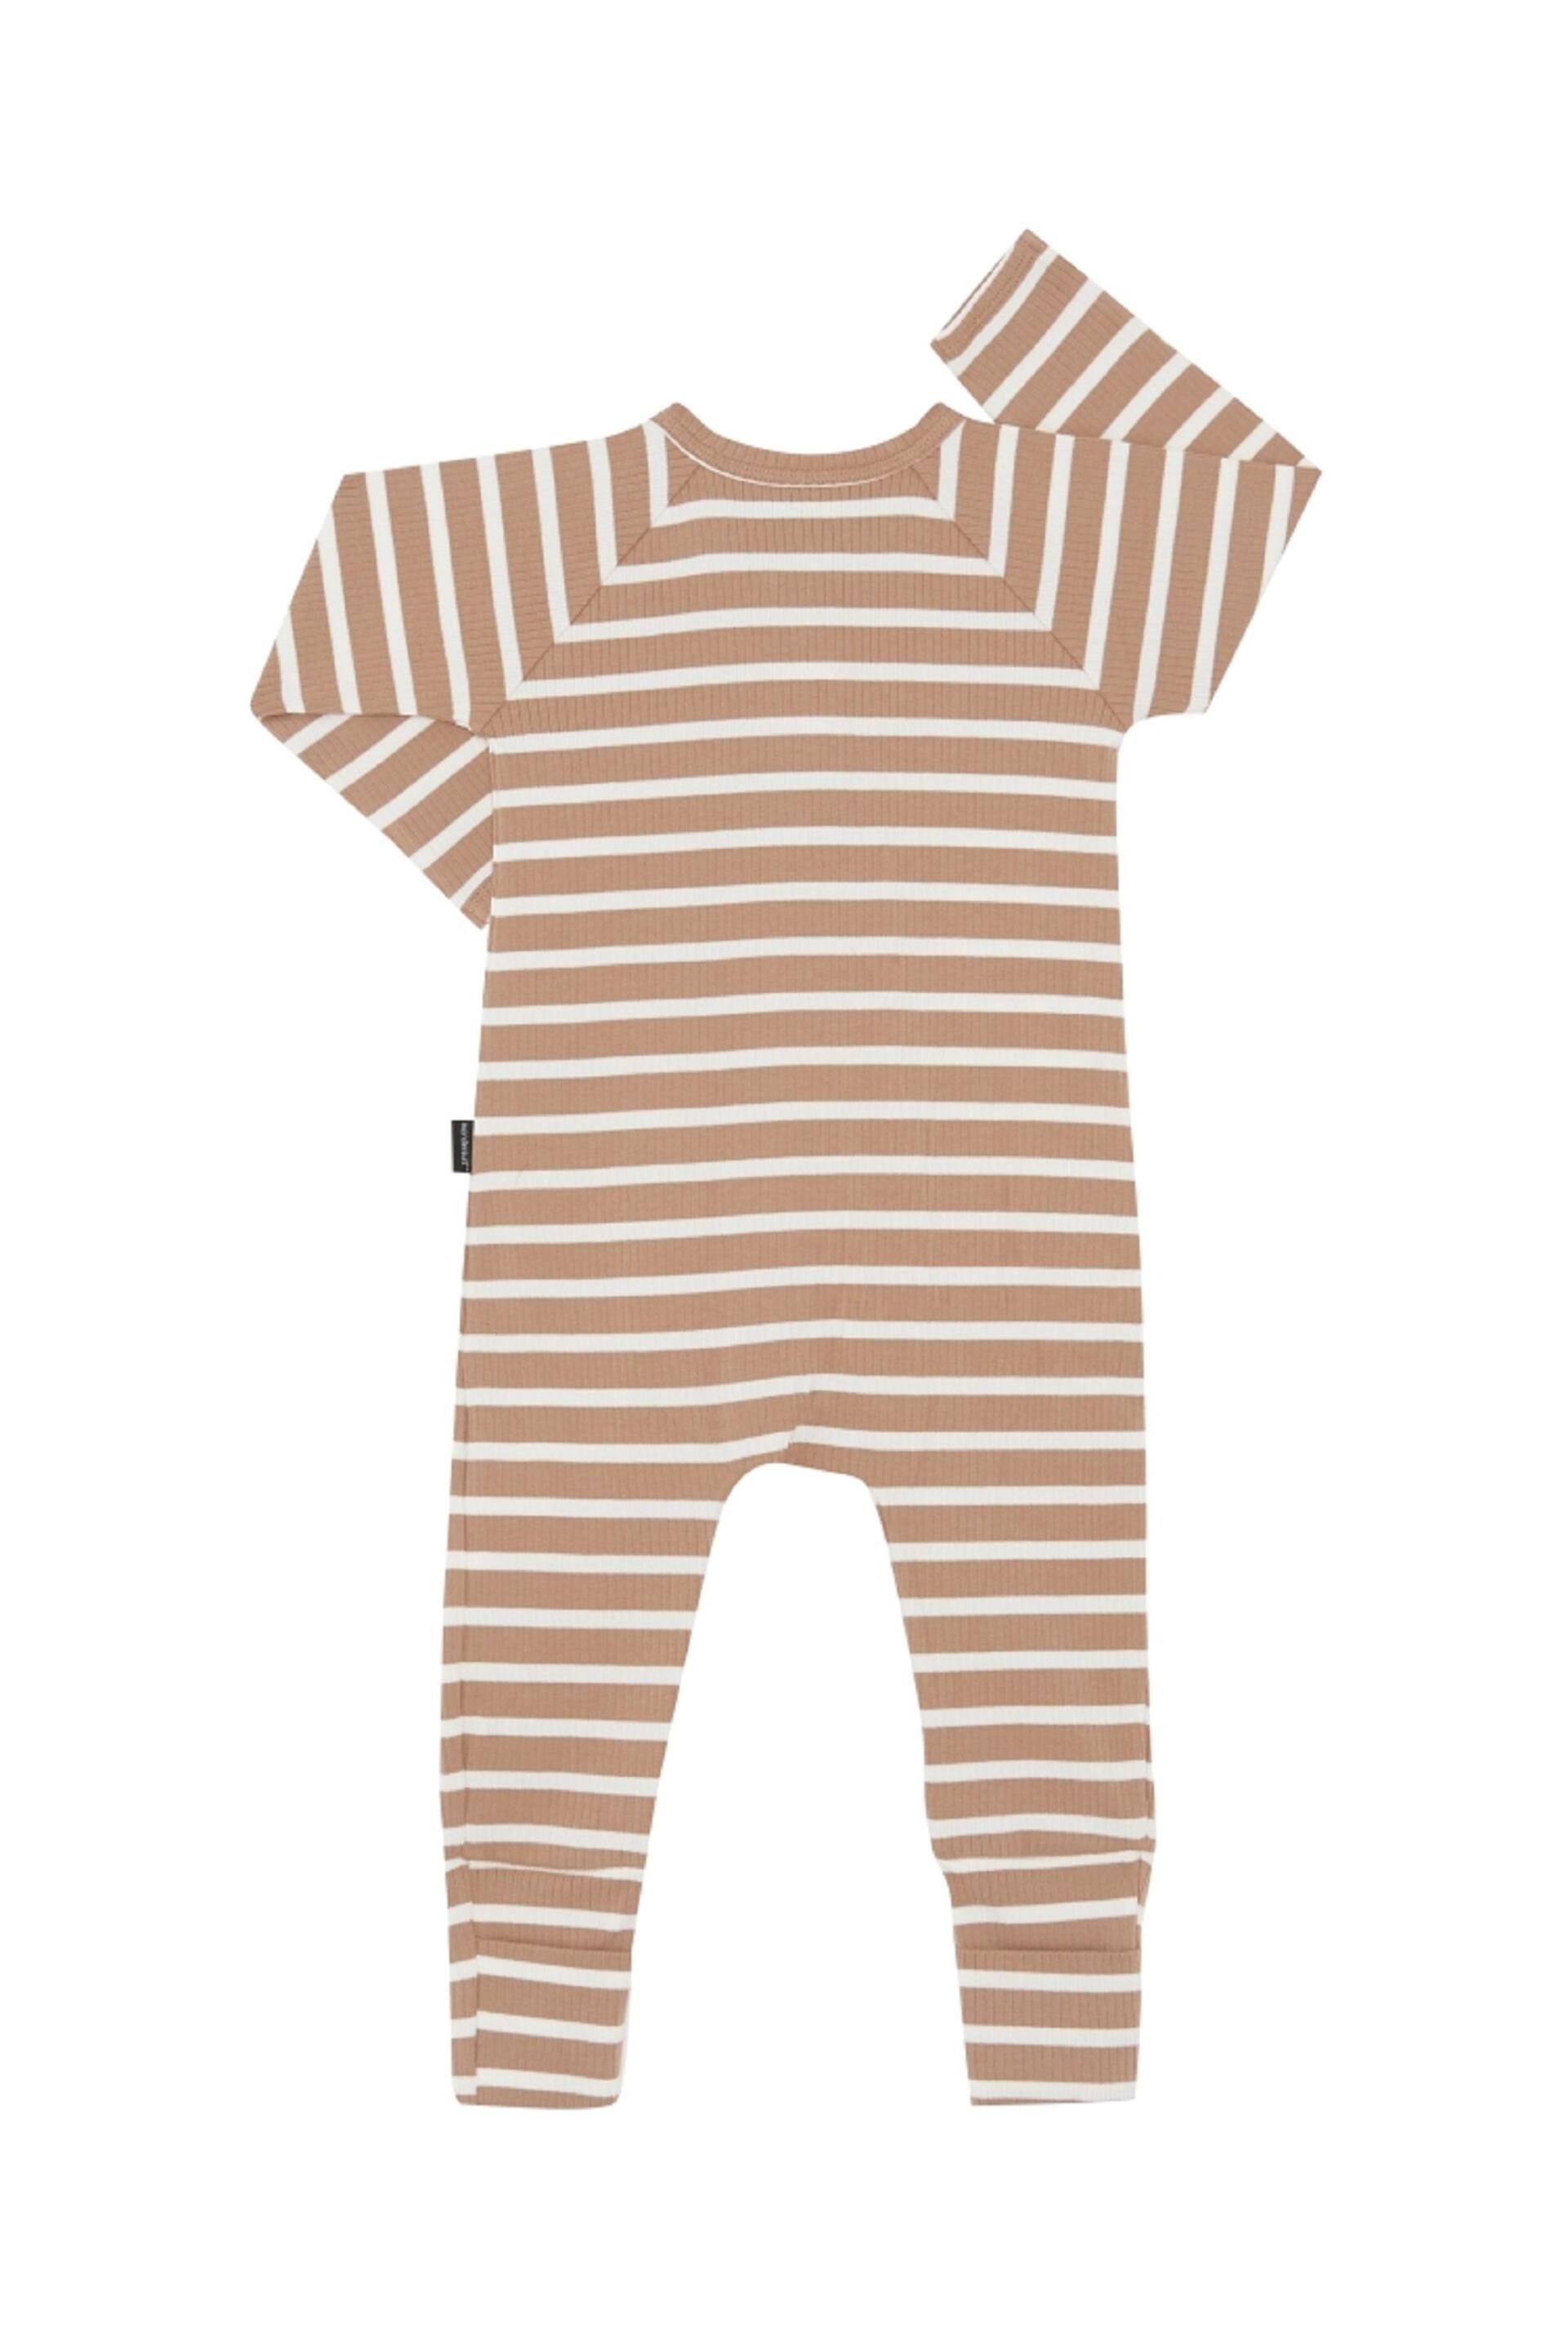 Bonds Natural Easy Stripe Zip Sleepsuit Wondersuit - Image 2 of 4